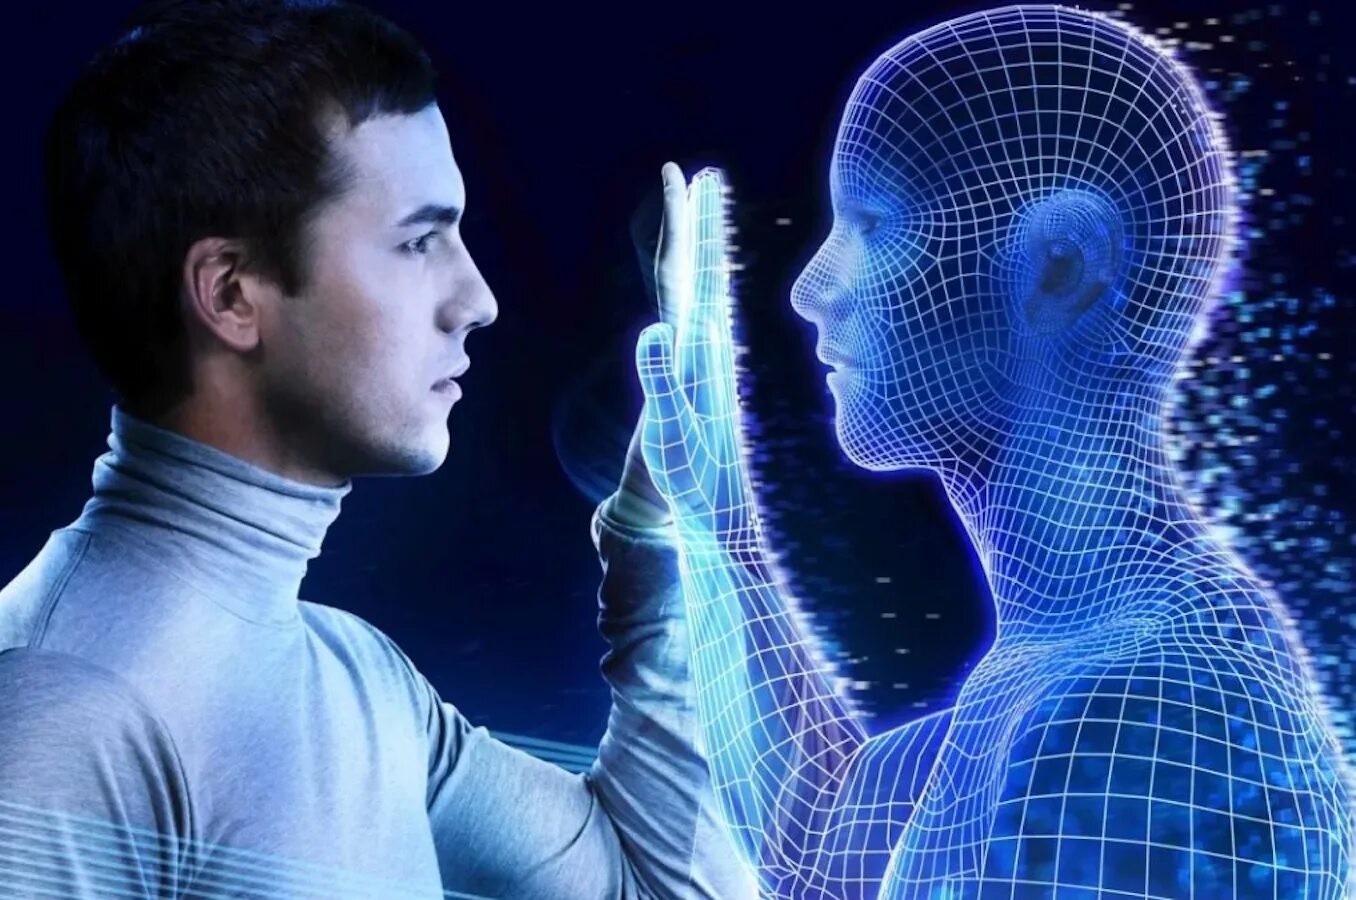 Ии в системах безопасности. Искусственный интеллект. Искусственный интеллект и человек. Технологии искусственного интеллекта. Будущее человека.